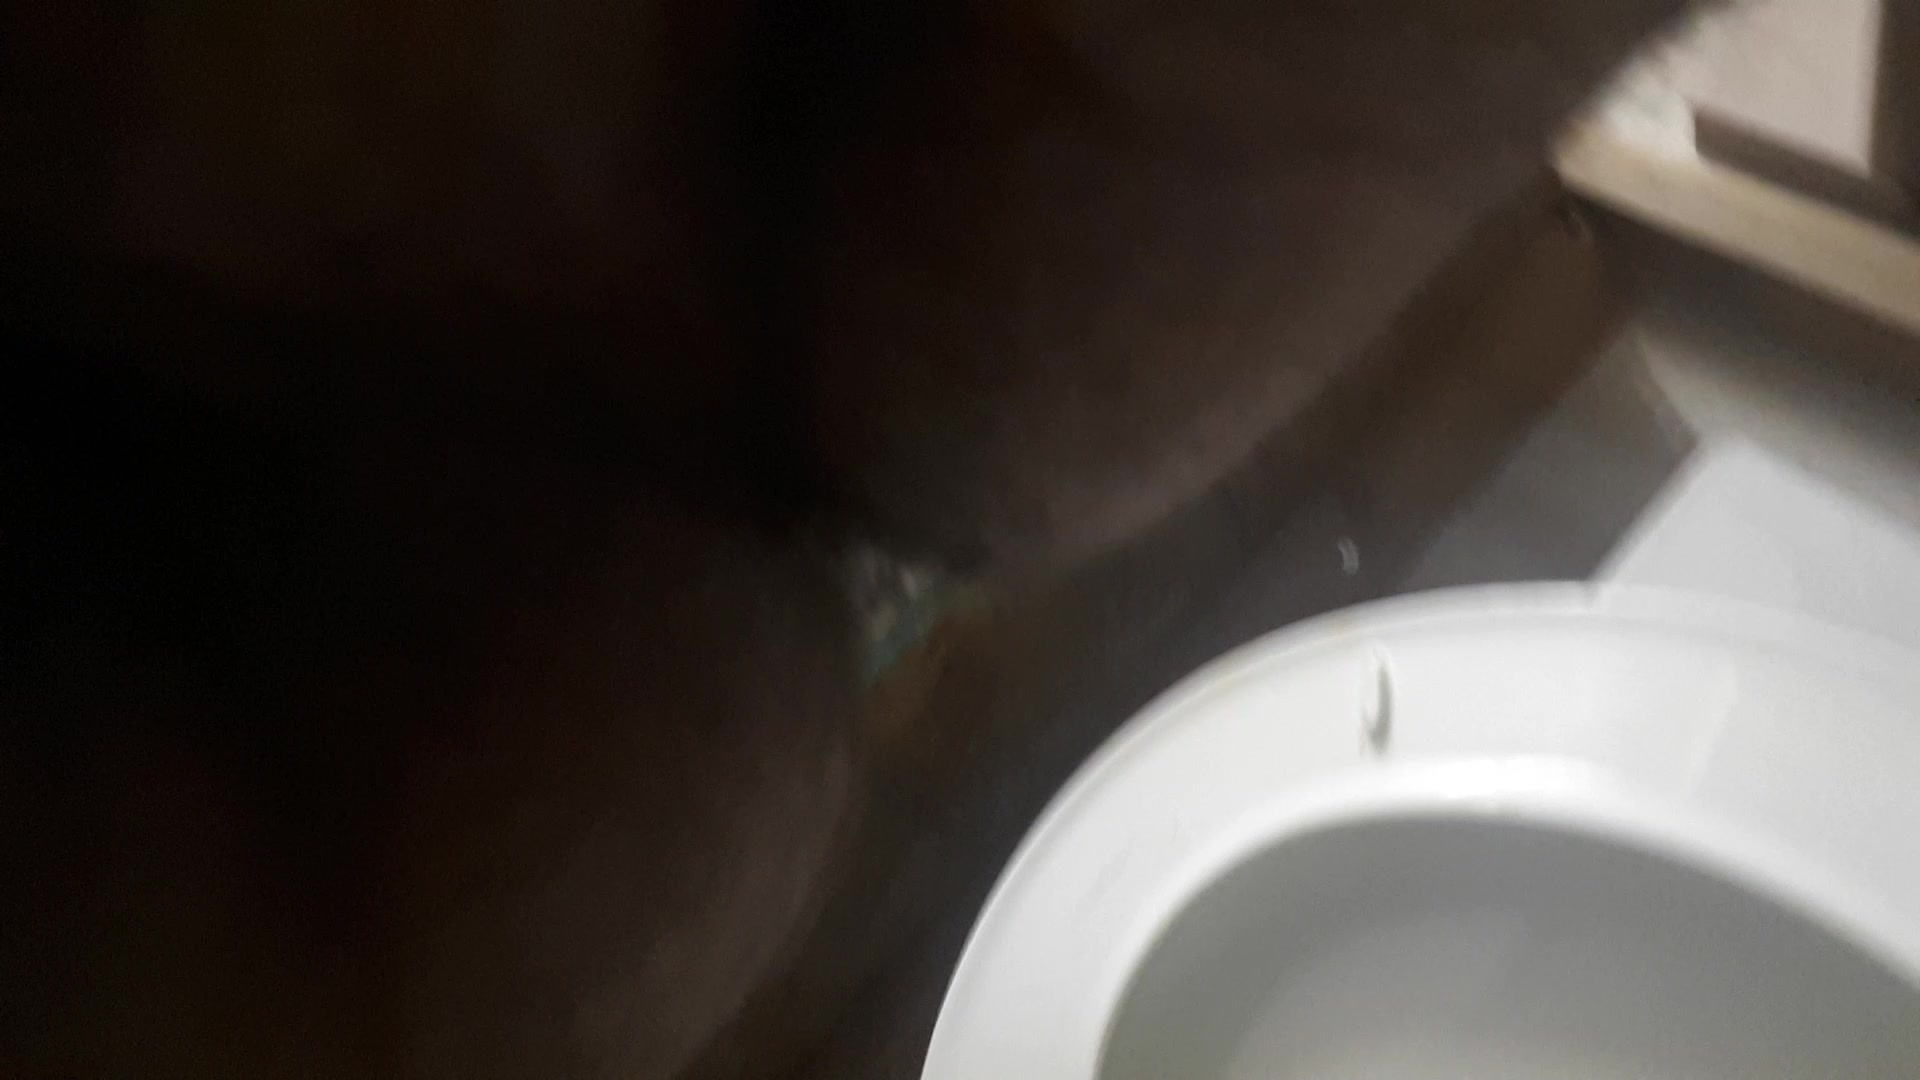 shittin on a toilet